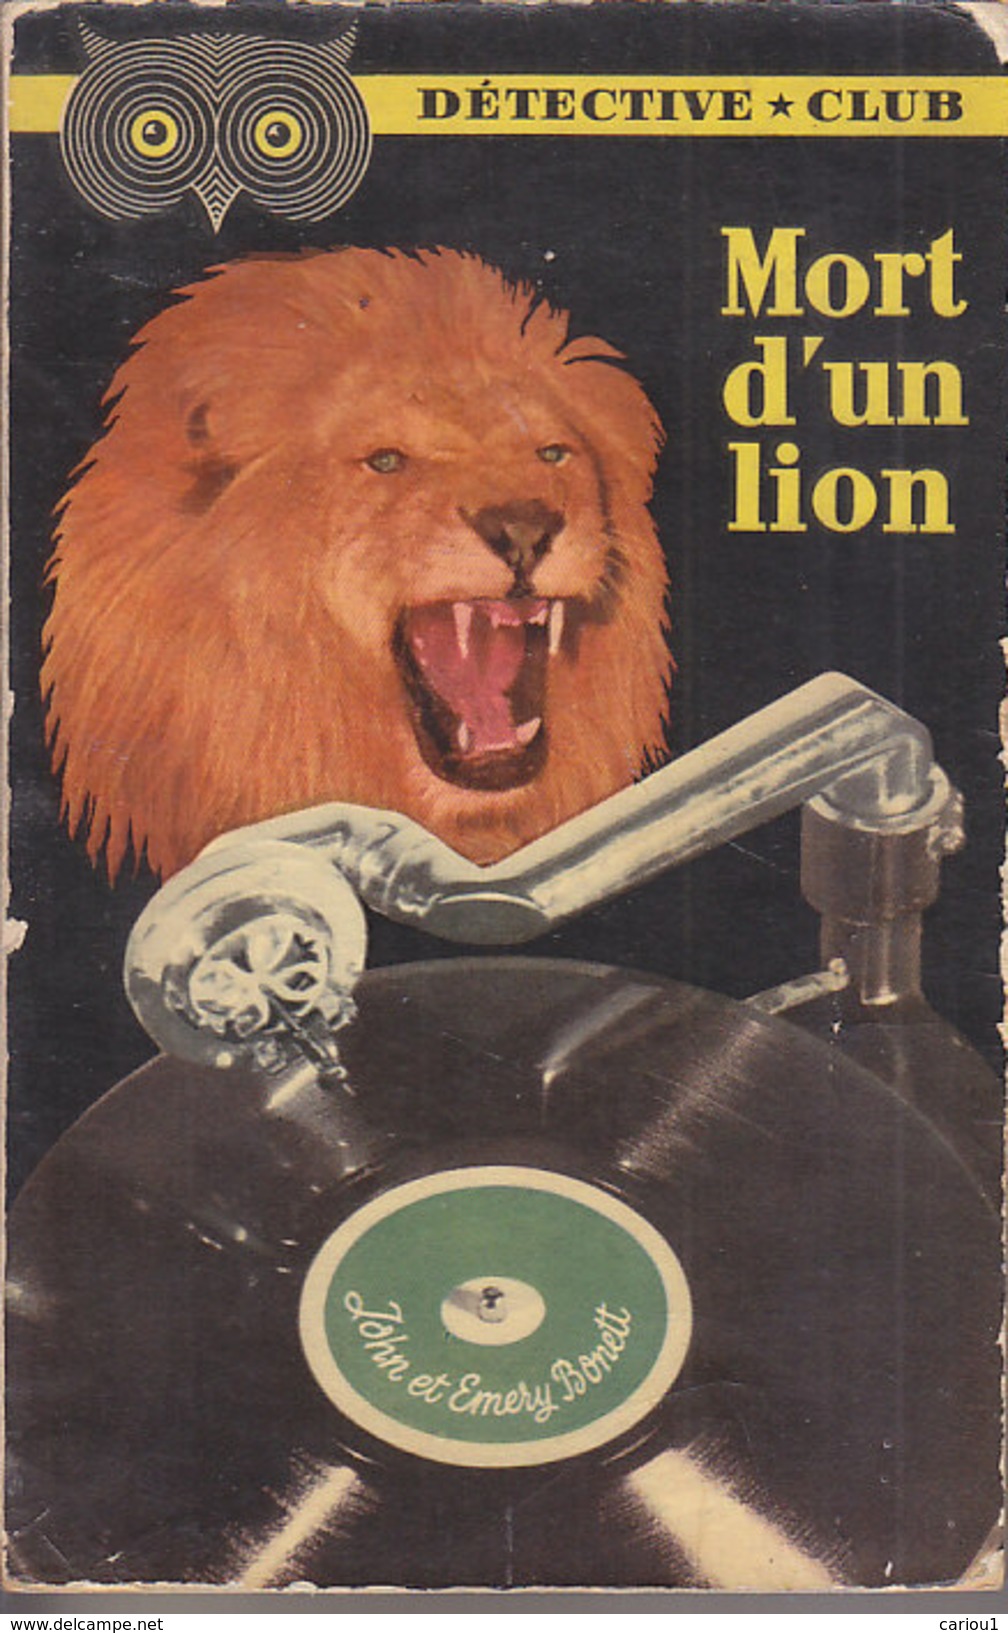 C1 John Et Emery BONETT Mort D Un Lion 1953 DETECTIVE CLUB Dead Lion MANDRAKE - Ditis - Détective Club